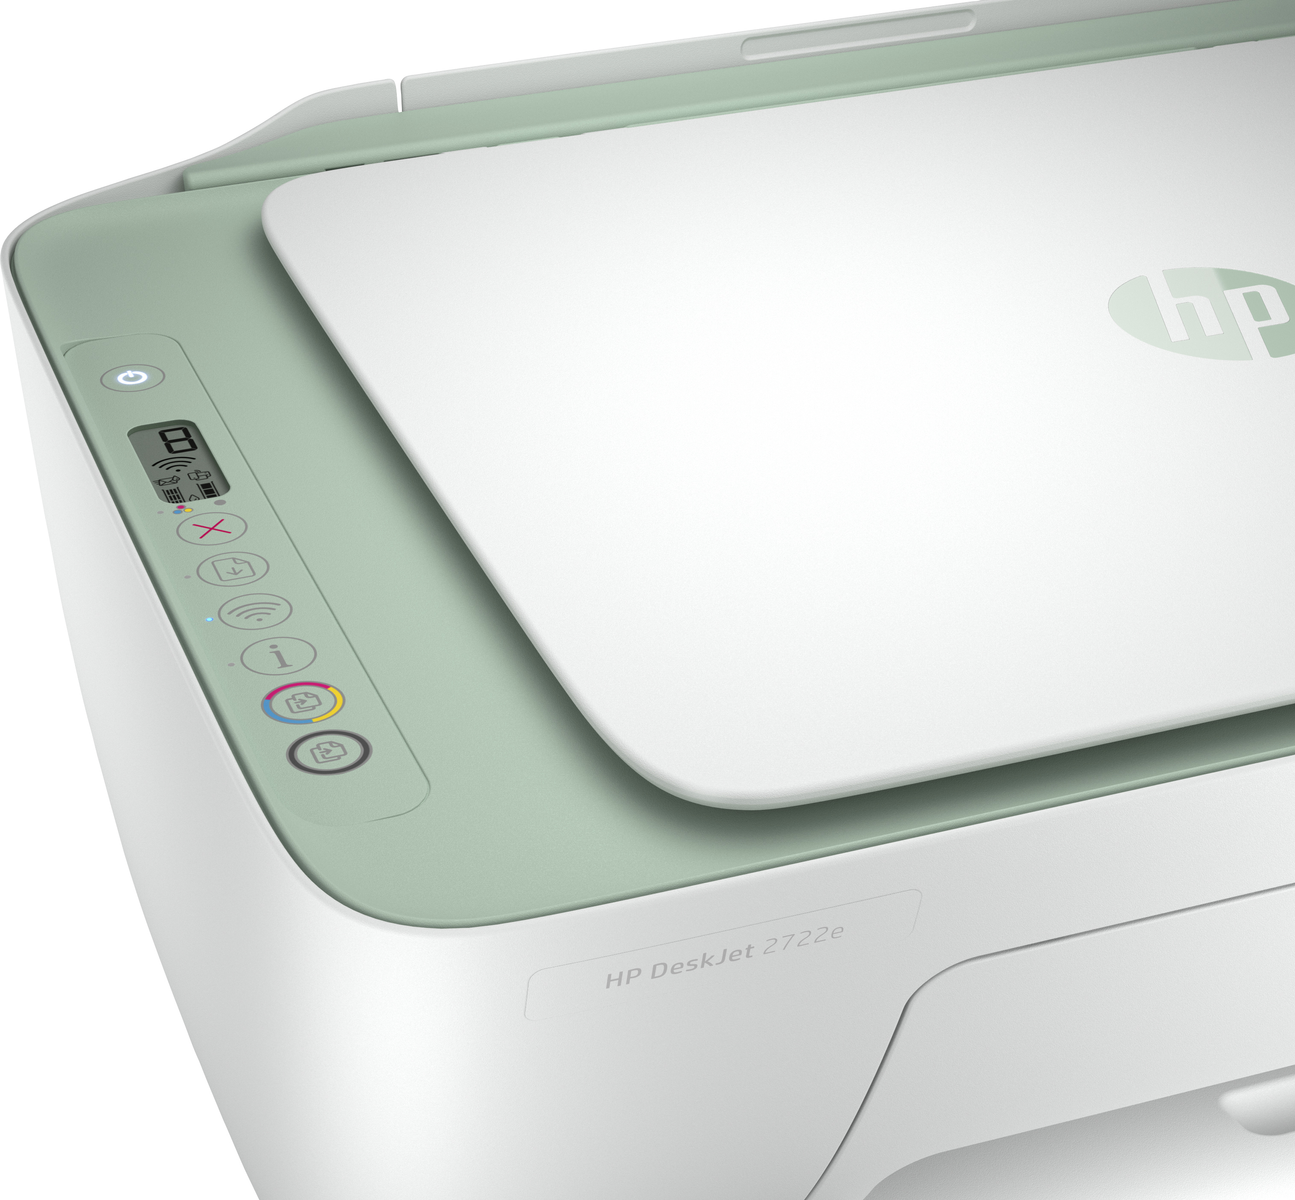 HP DeskJet Multifunktionsdrucker Inkjet WLAN 2722e